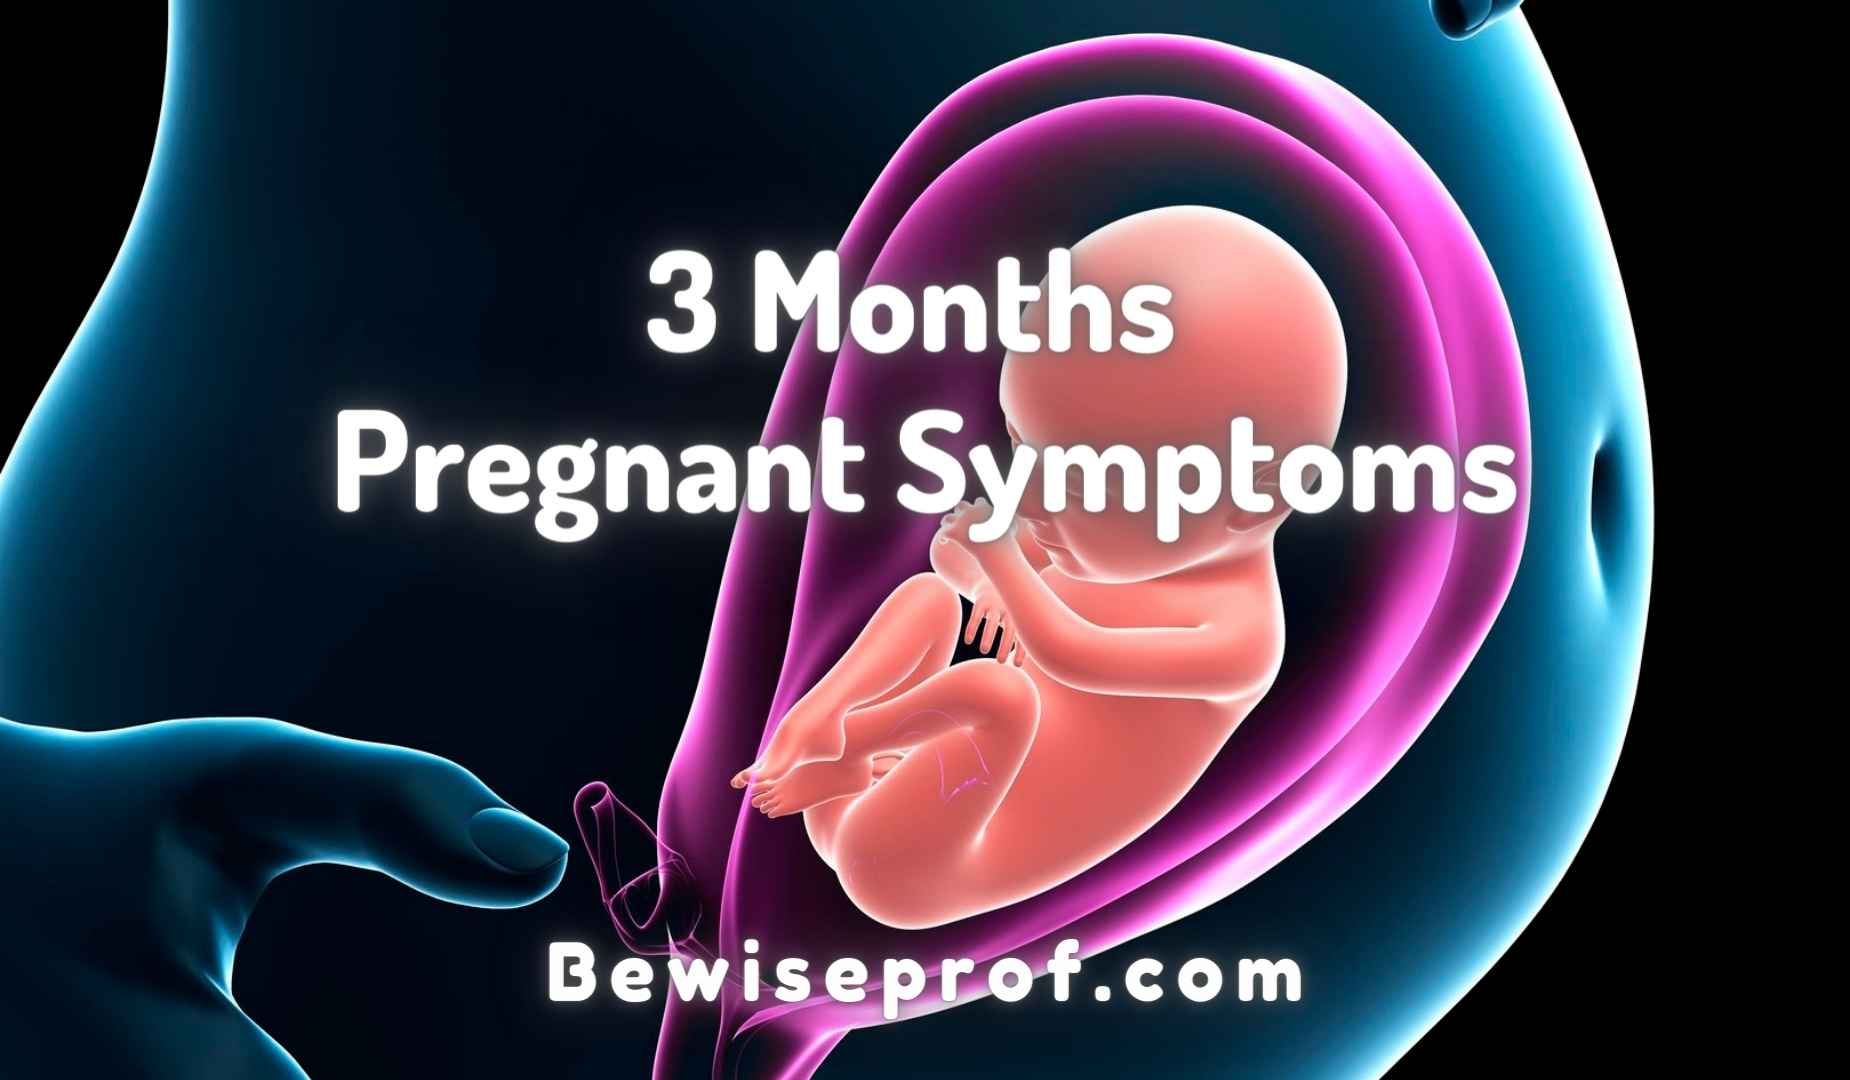 3 Months Pregnant Symptoms